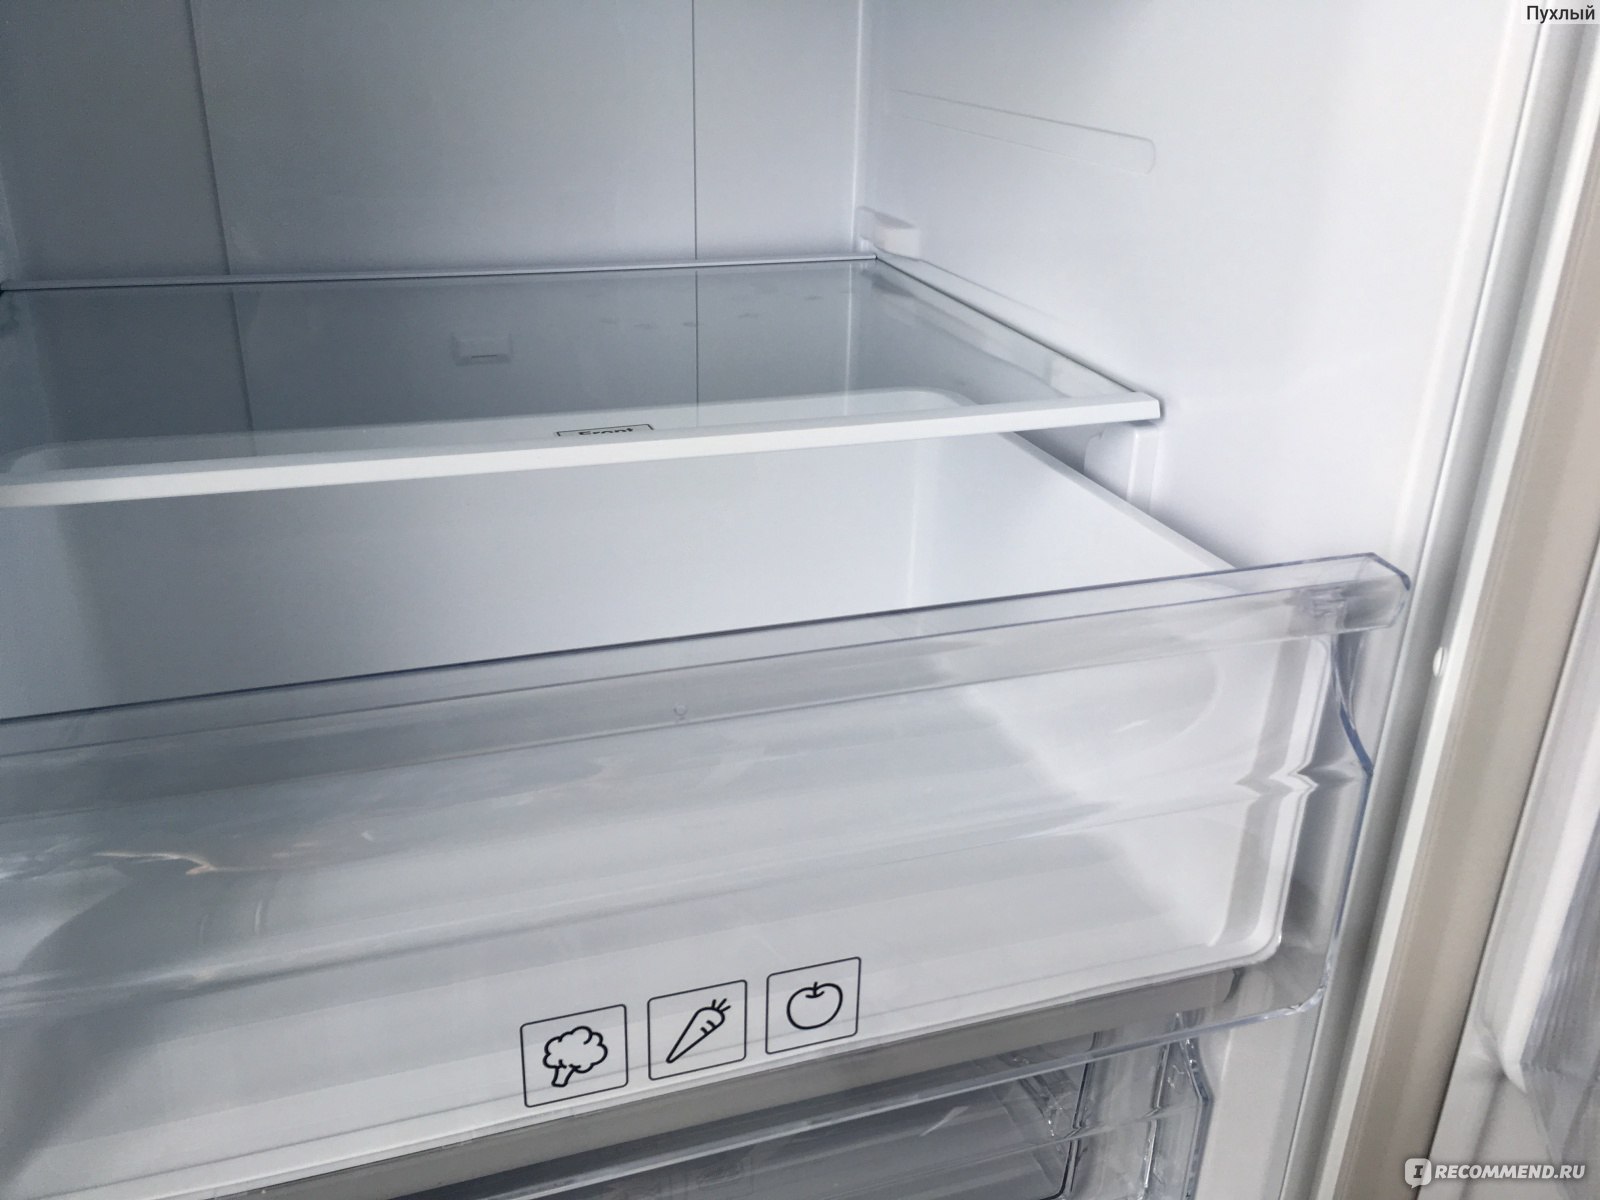 Самая холодная полка в холодильнике самсунг